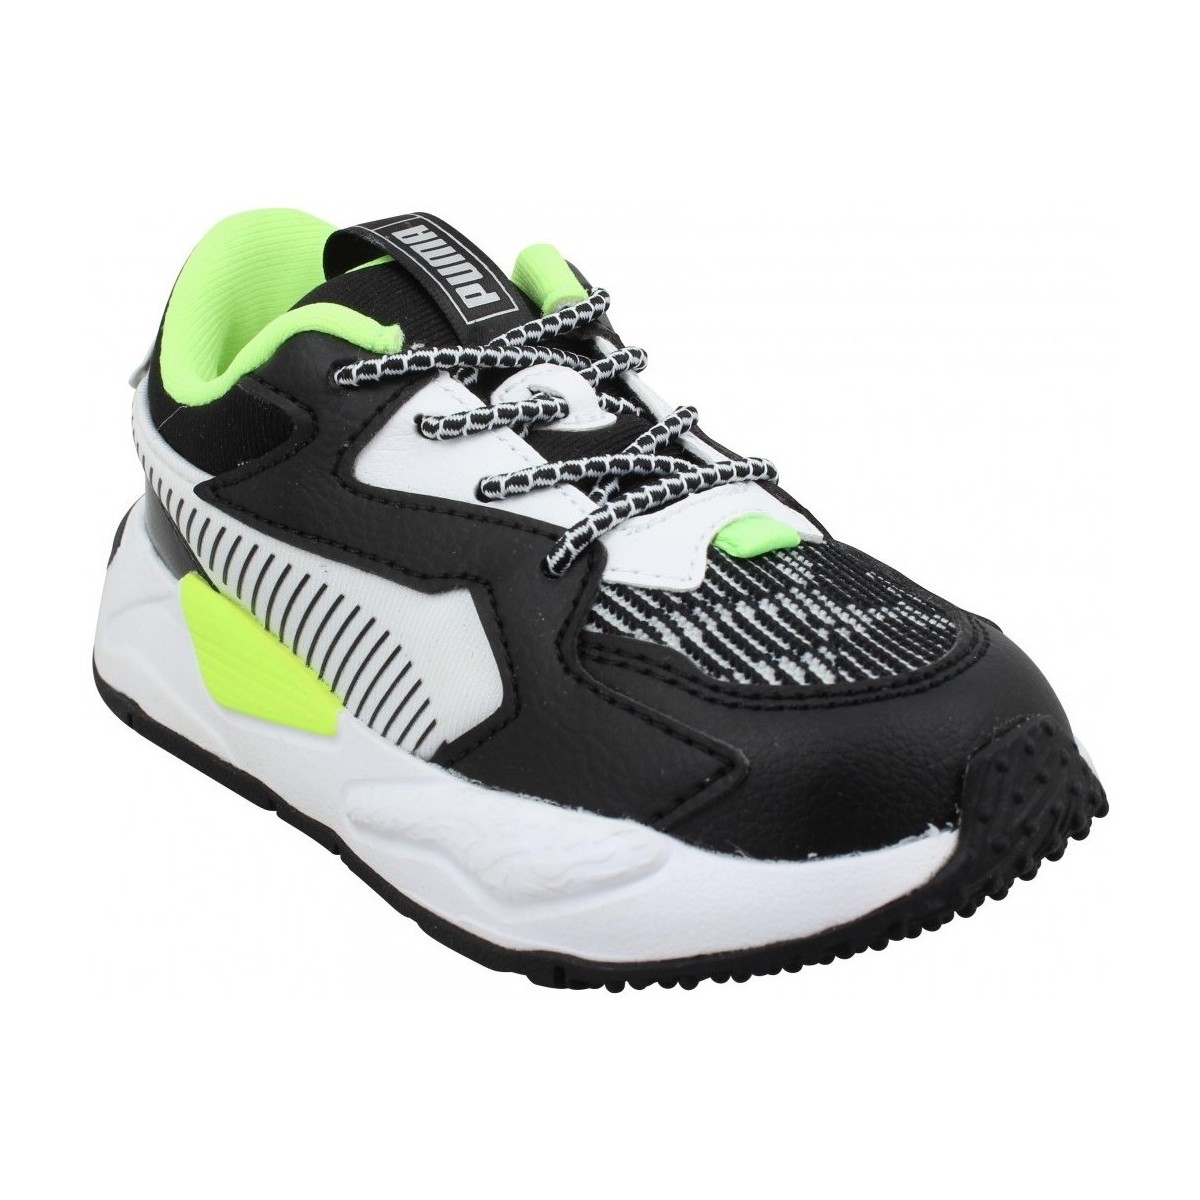 Παπούτσια Παιδί Sneakers Puma Rs Z Visual Effect Textile Enfant Noir Vert Green